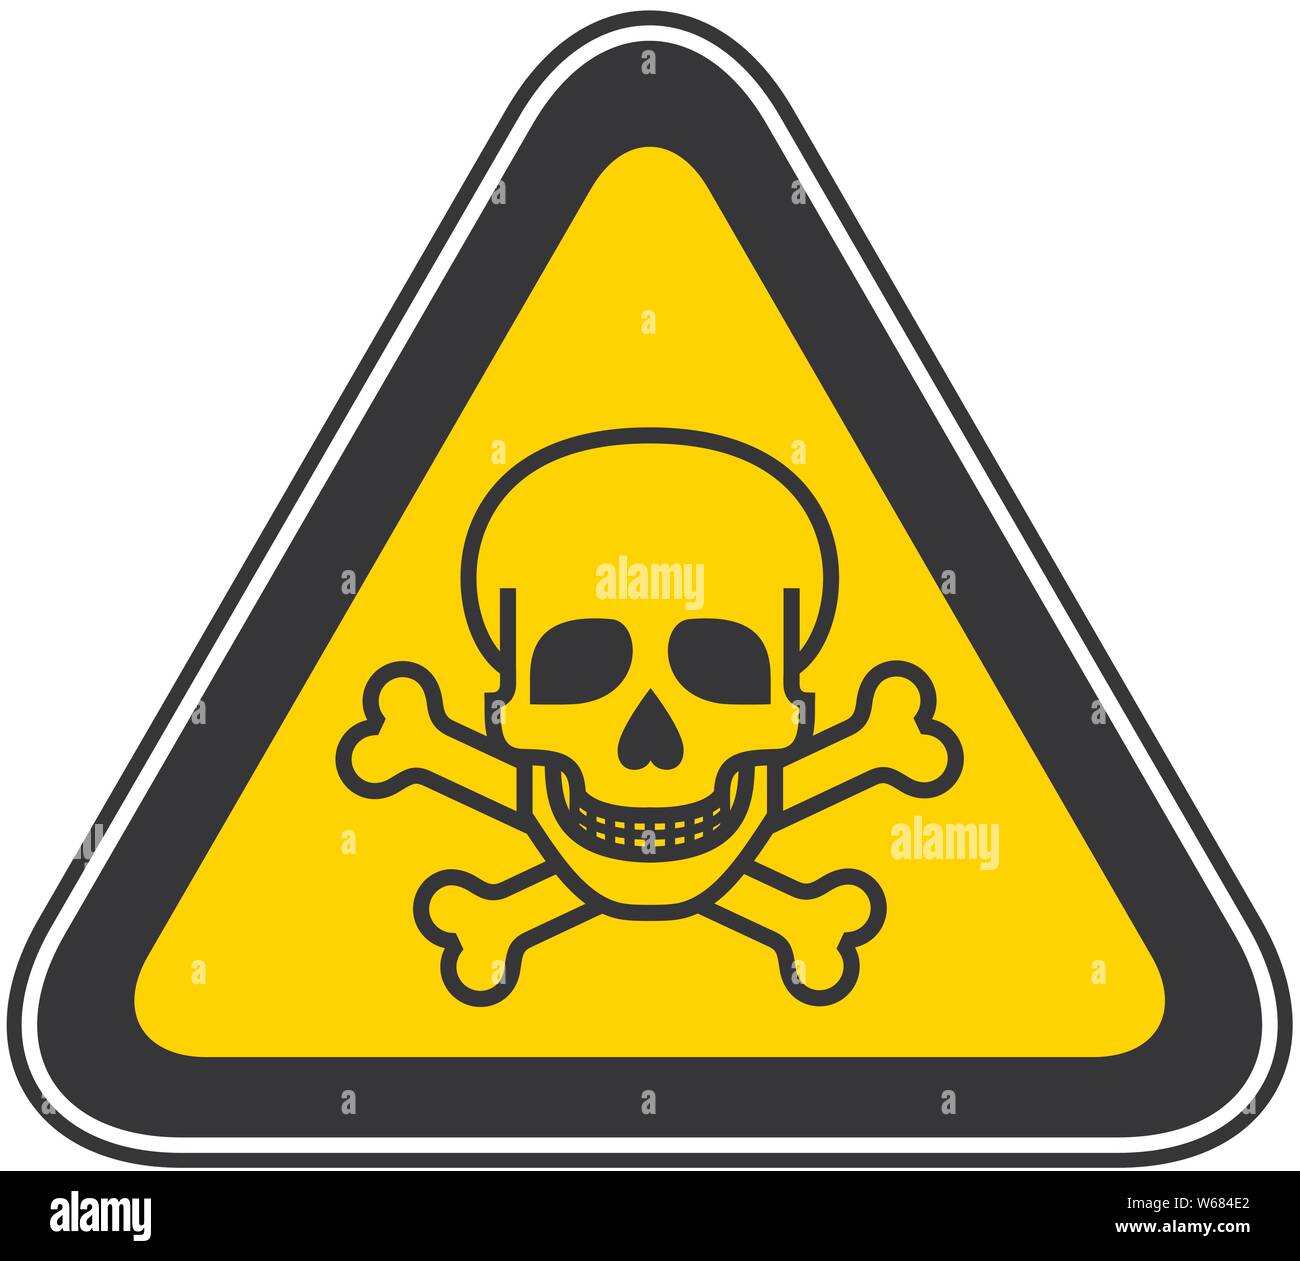 Triangular Warning Hazard Symbol Stock Vector